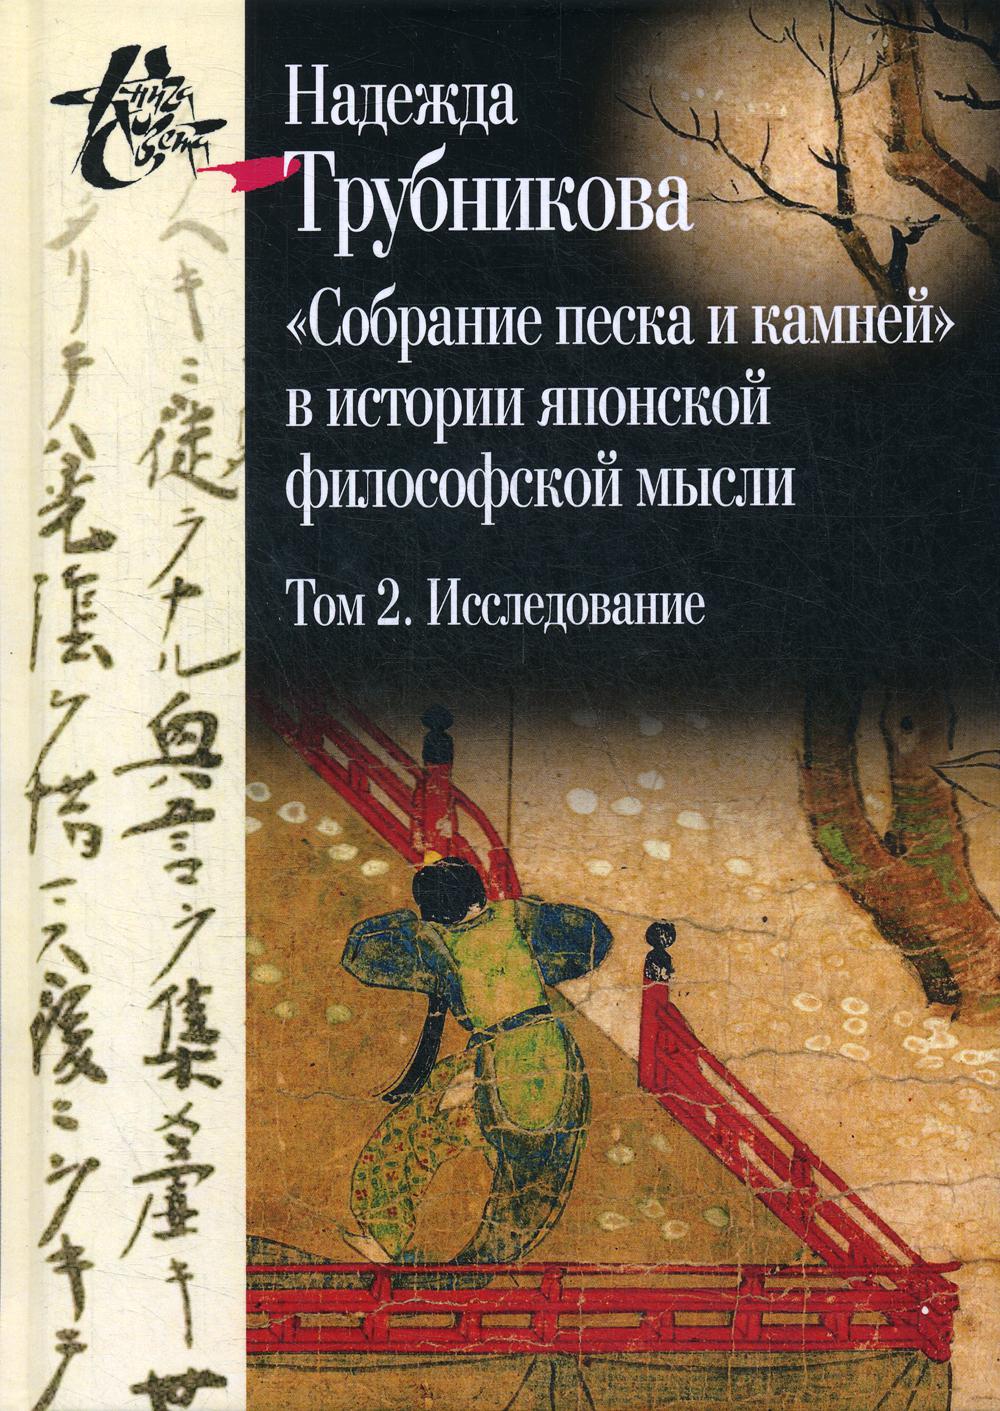 фото Книга собрание песка и камней в истории японской философской мысли центр гуманитарных инициатив